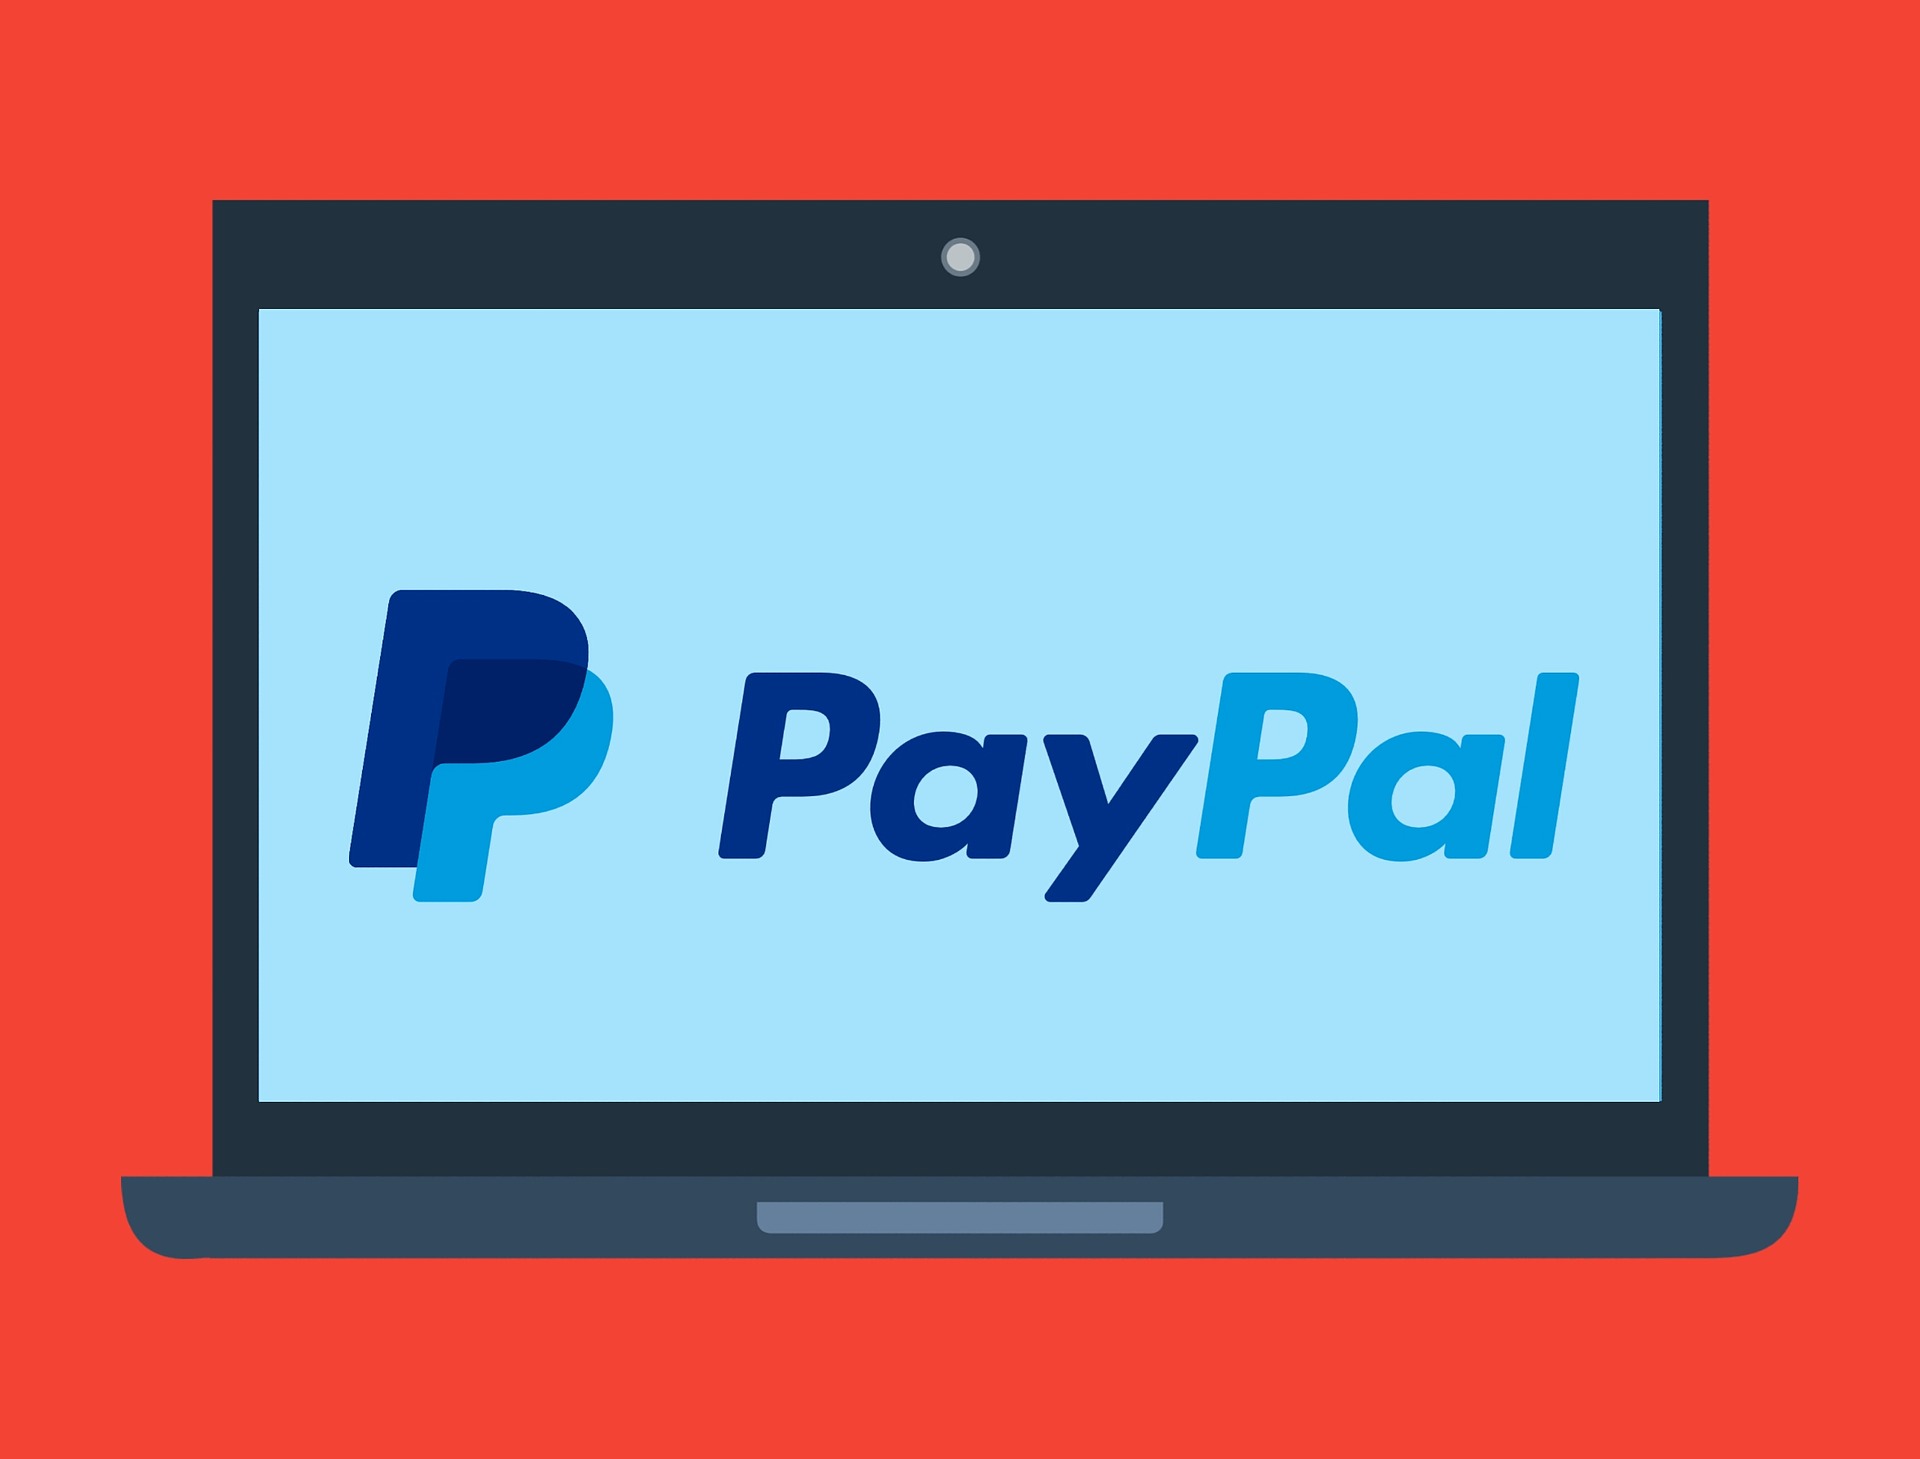 PayPal logo - PayPal opkøber svenske iZettle for 2,2 milliarder dollars